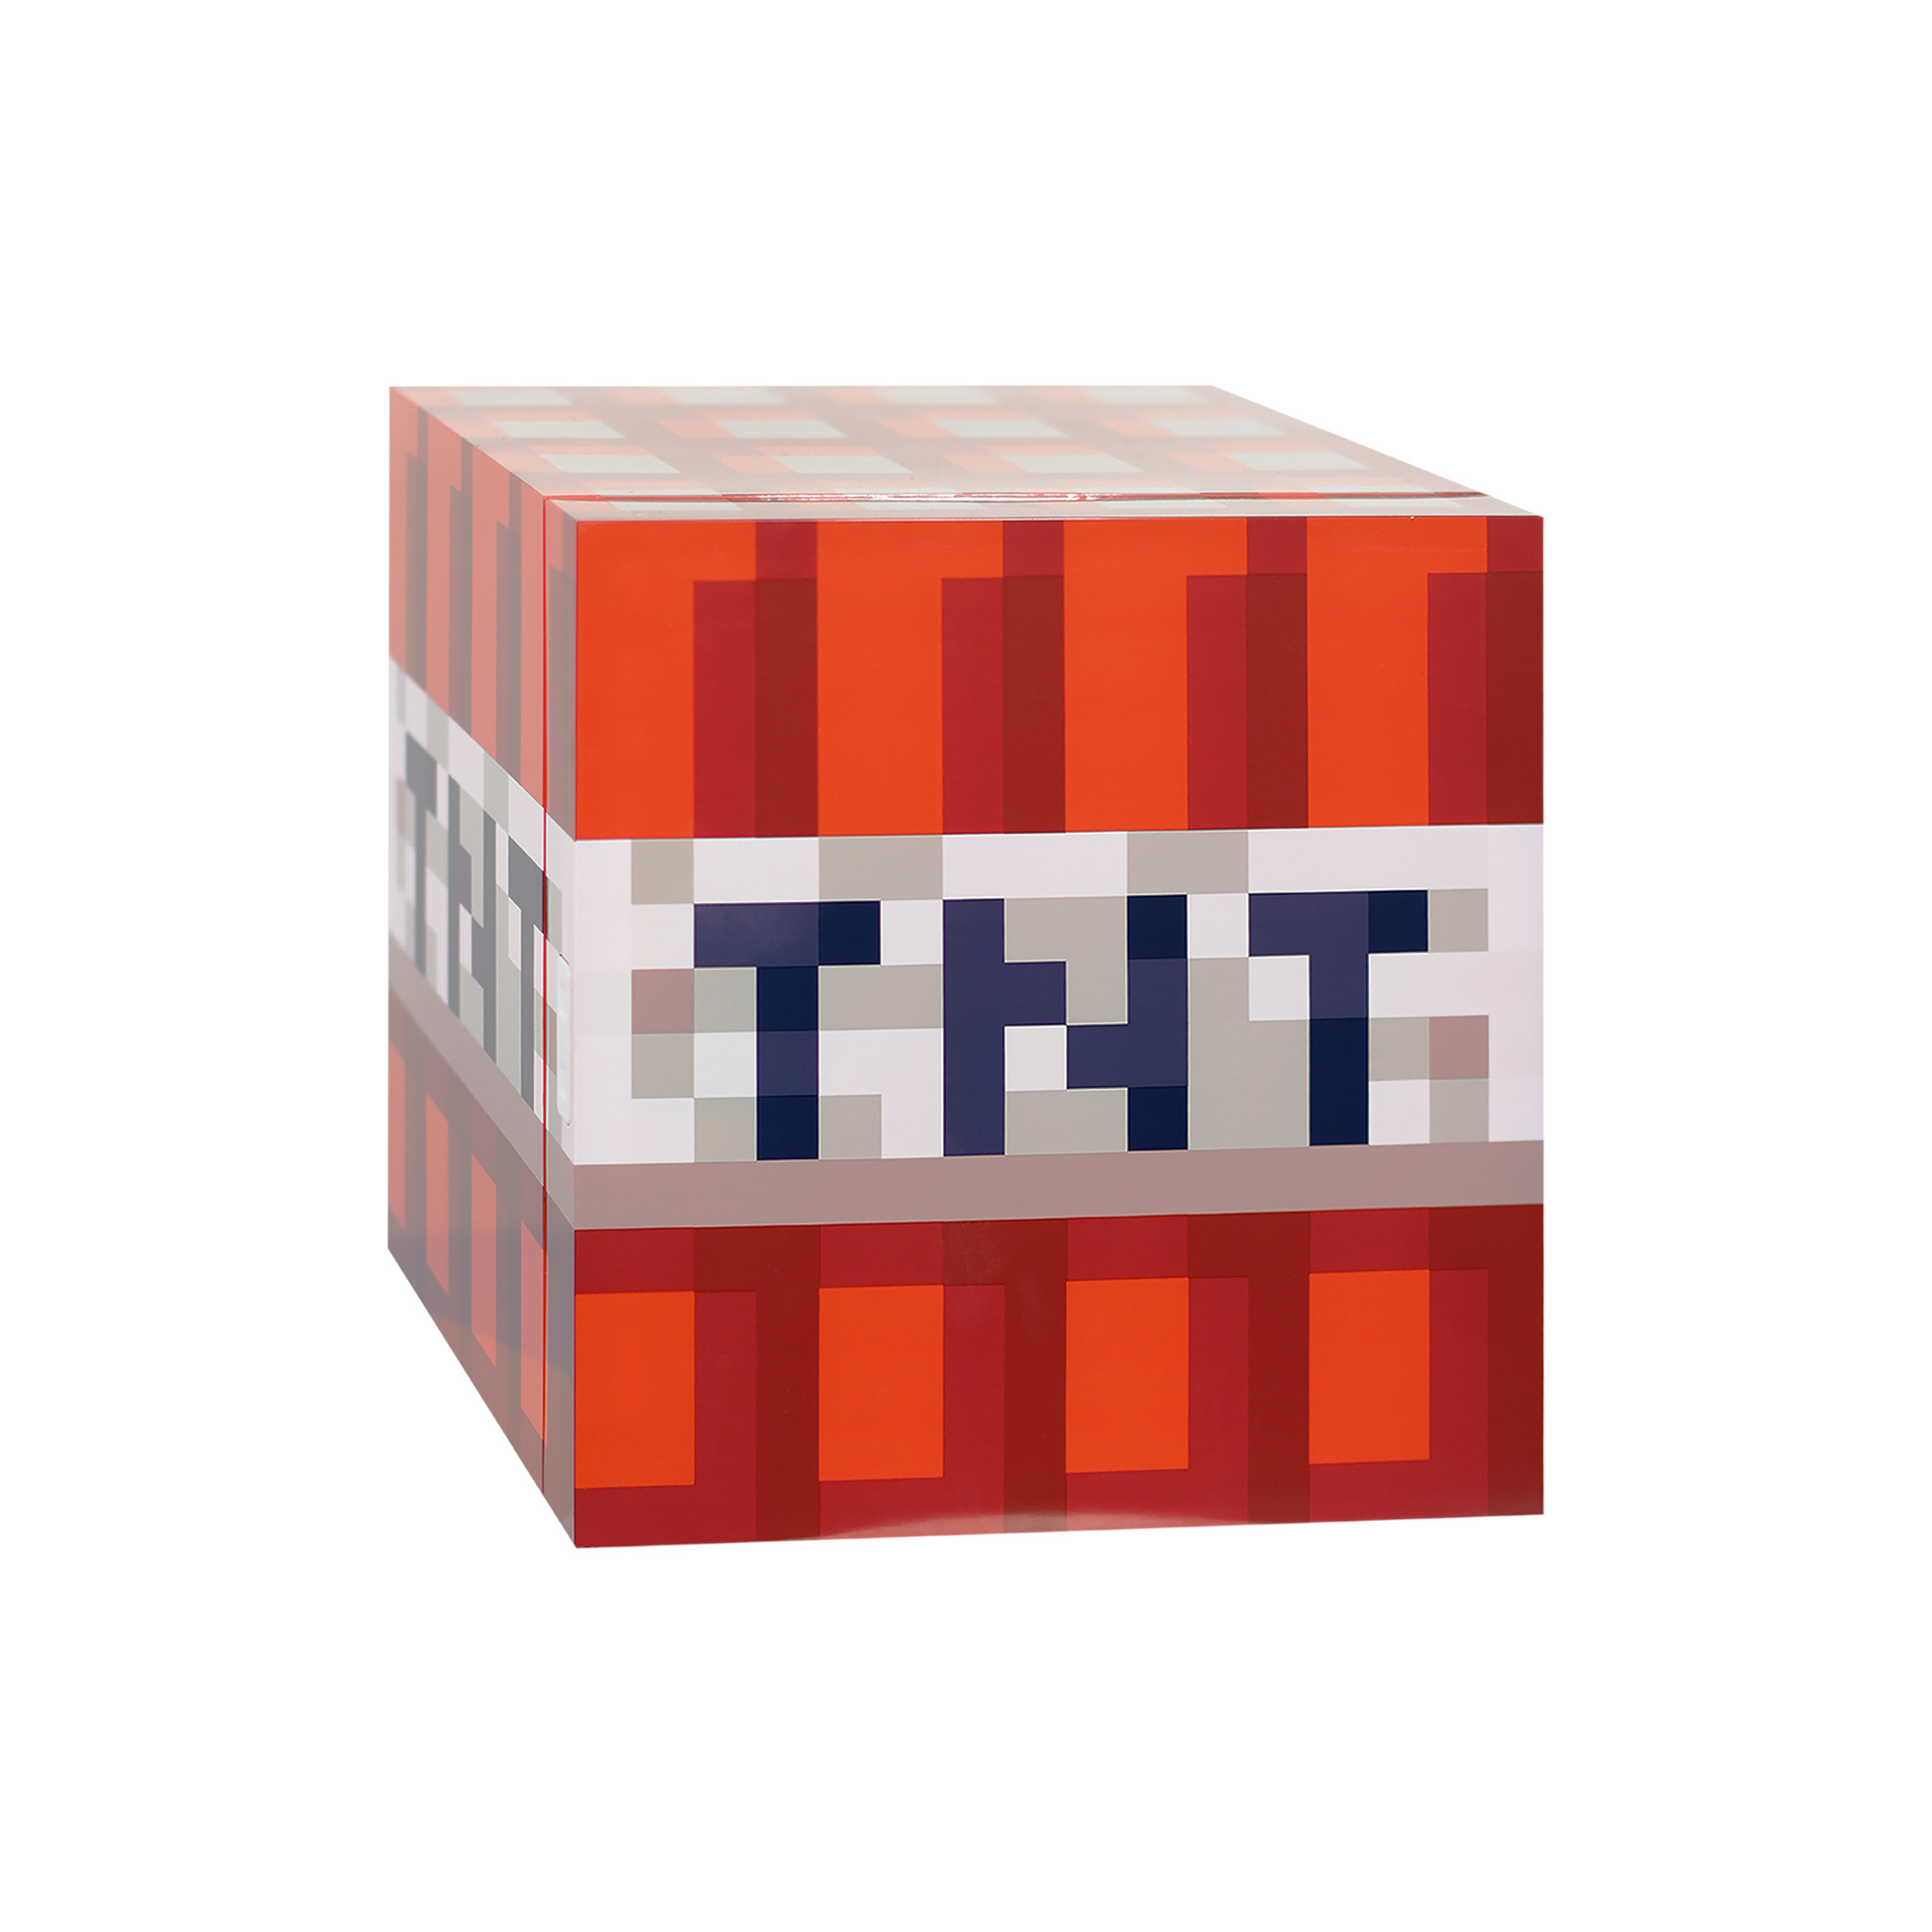 Minecraft Red TNT or Green Creeper x9 Can Mini Fridge $29.98 (Reg